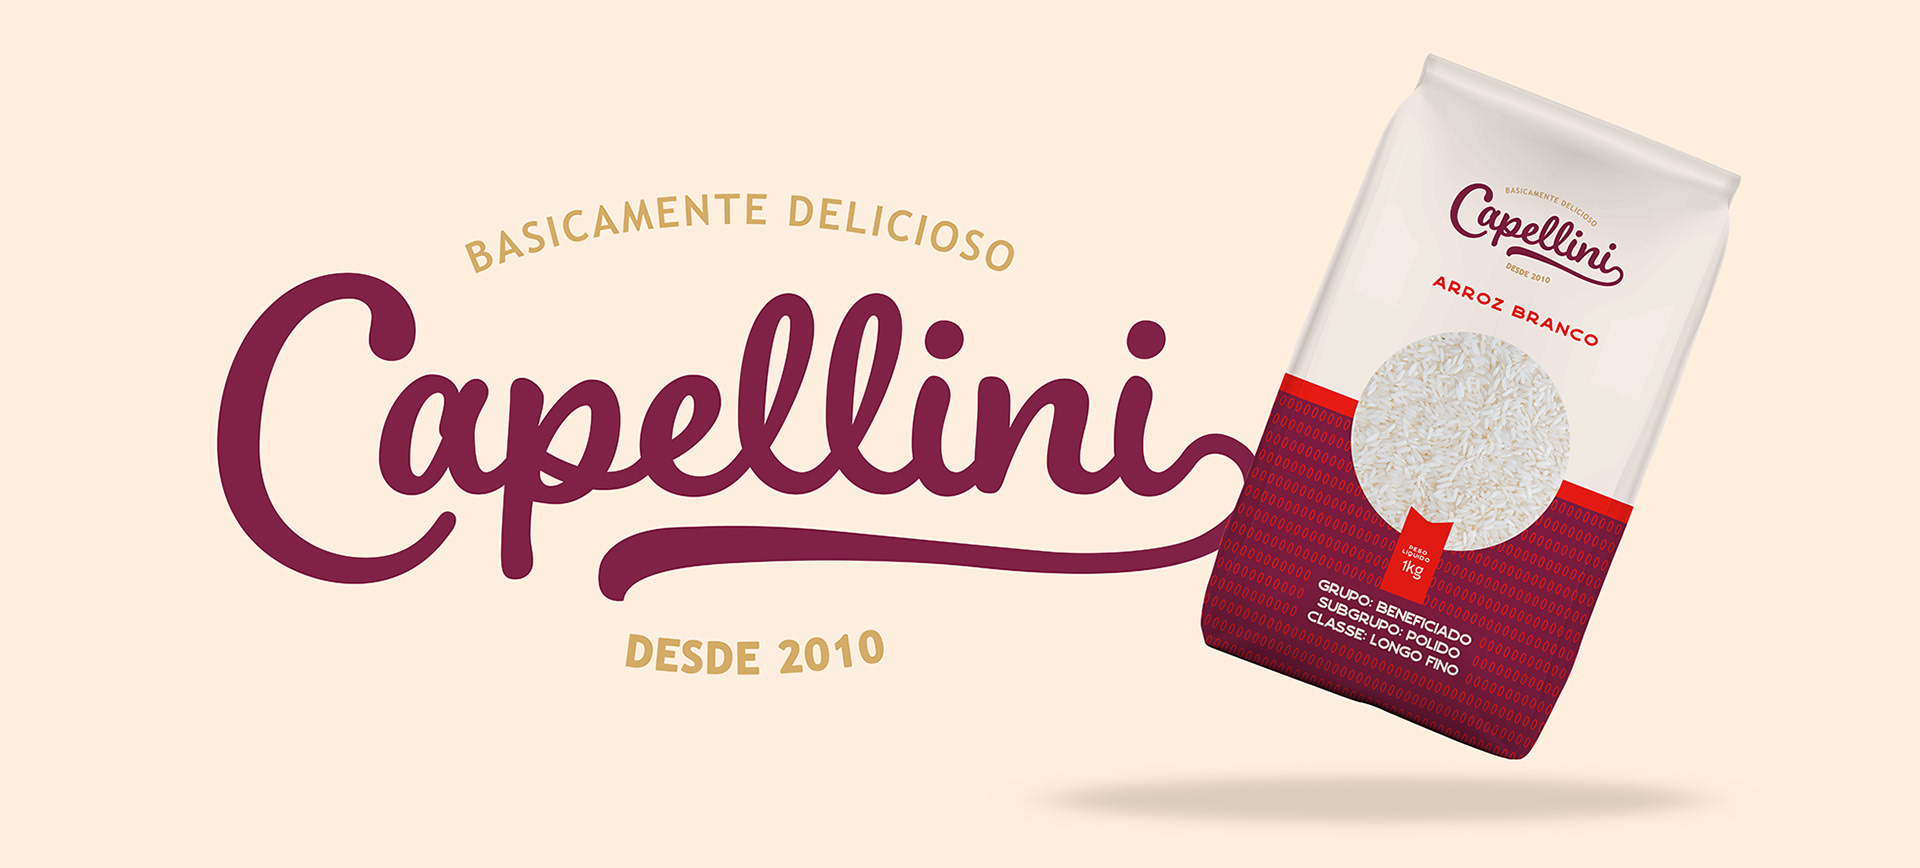 Brand Capellini Boutique